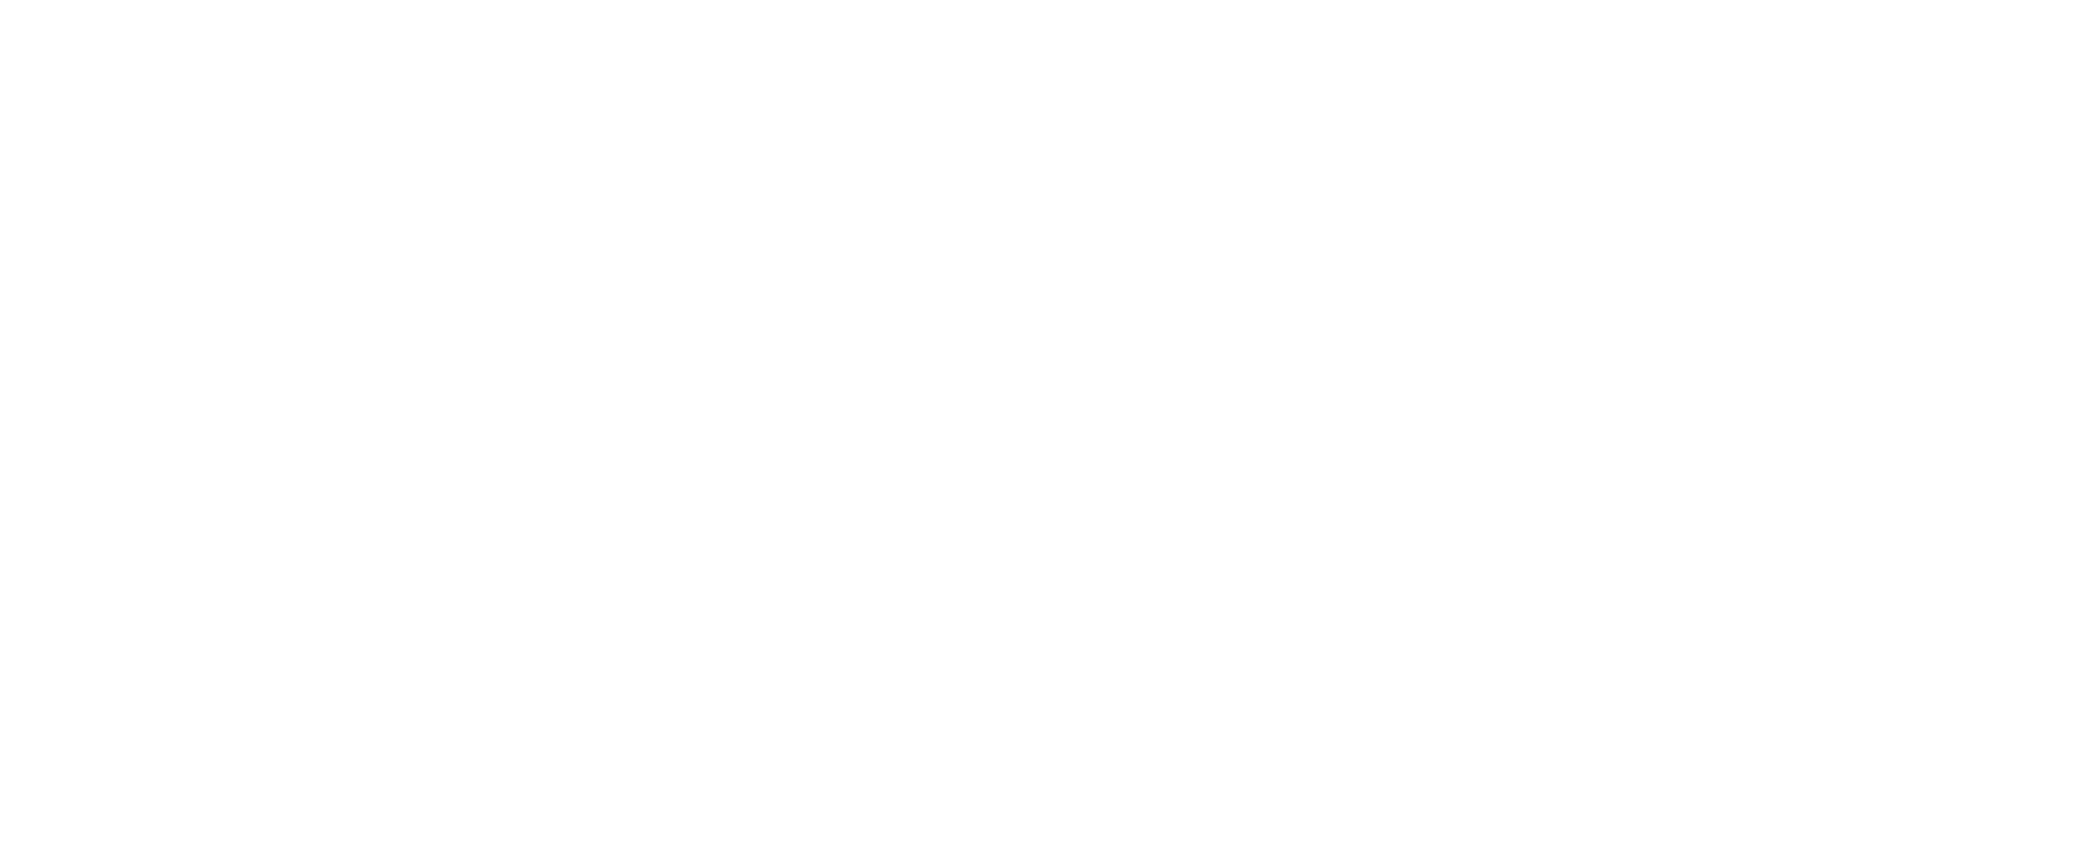 Pierre Du Pasquier Business publishing